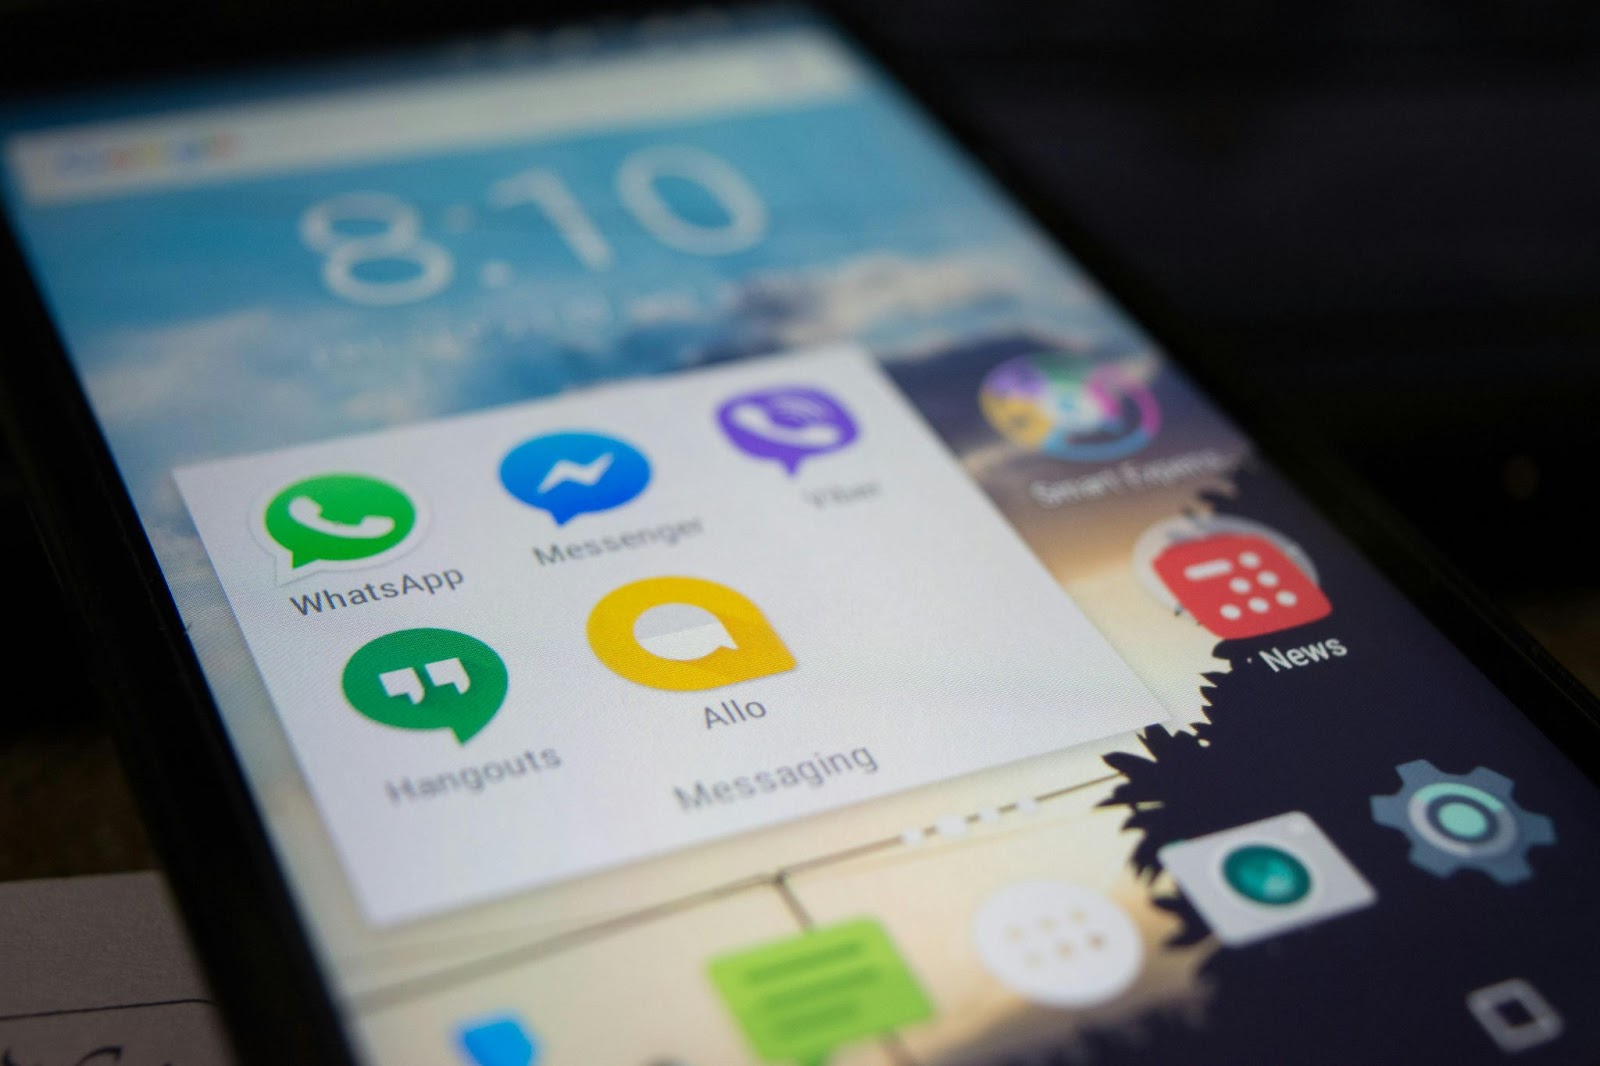 pantalla de un teléfono inteligente con varios iconos de aplicaciones de mensajería y redes sociales, entre ellos, whatsapp pay